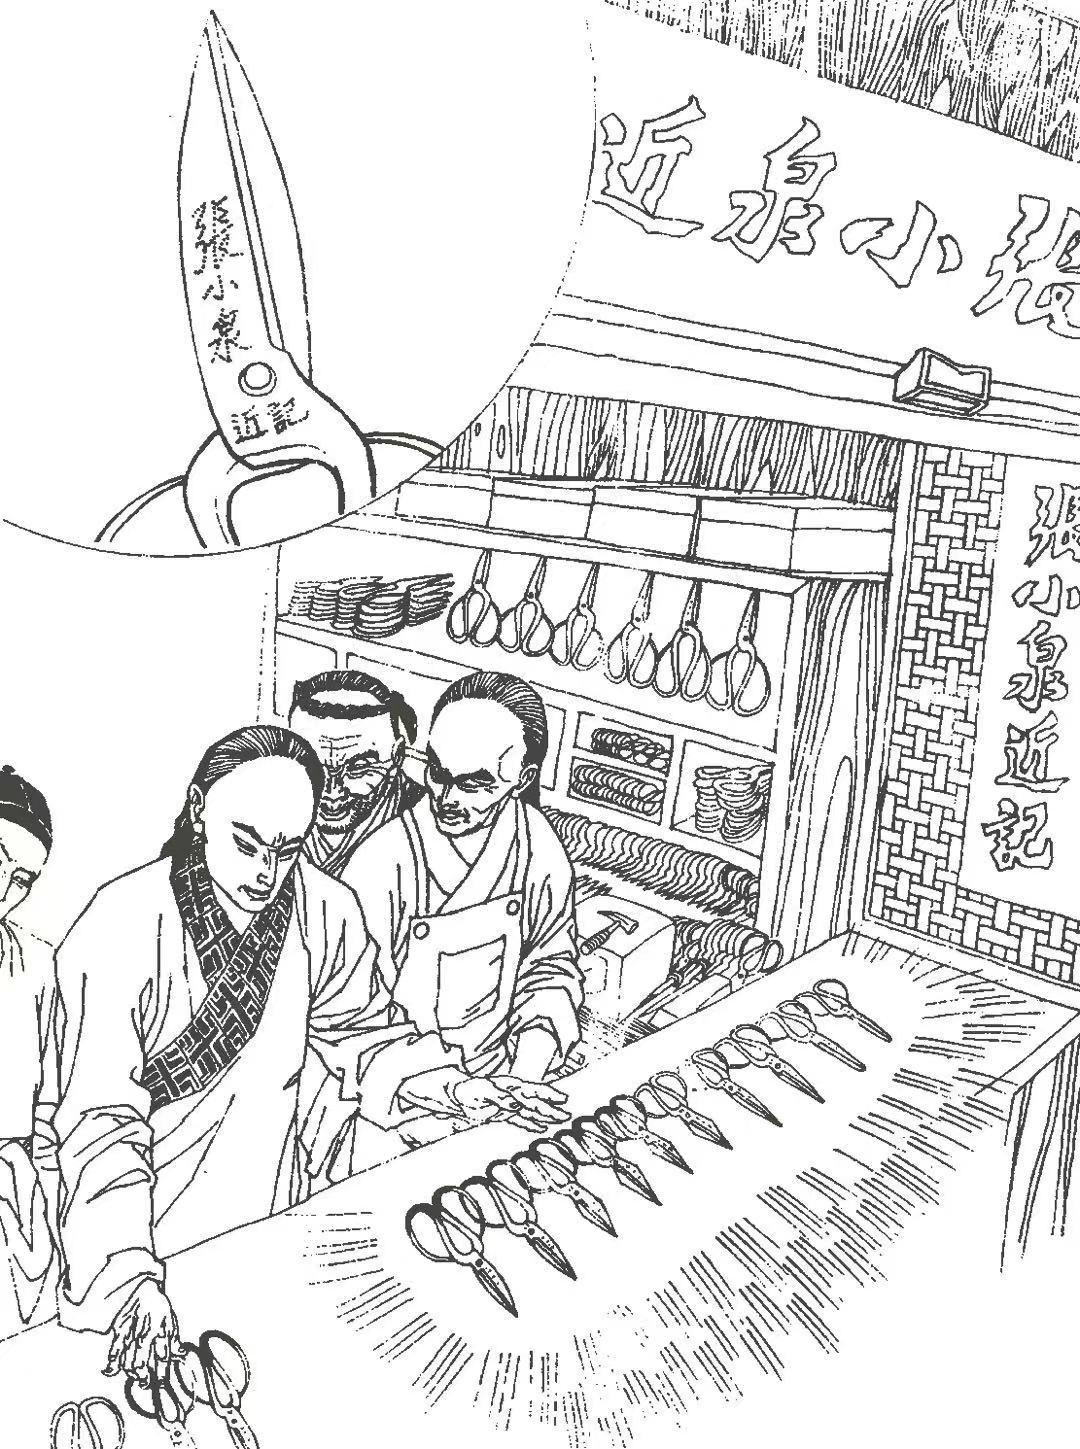 Jinji of Zhang Xiaoquan: in 1663, Zhang Jinggao added the word "Jinji" under the words "Zhang Xiaoquan" to show the authentic lineage.